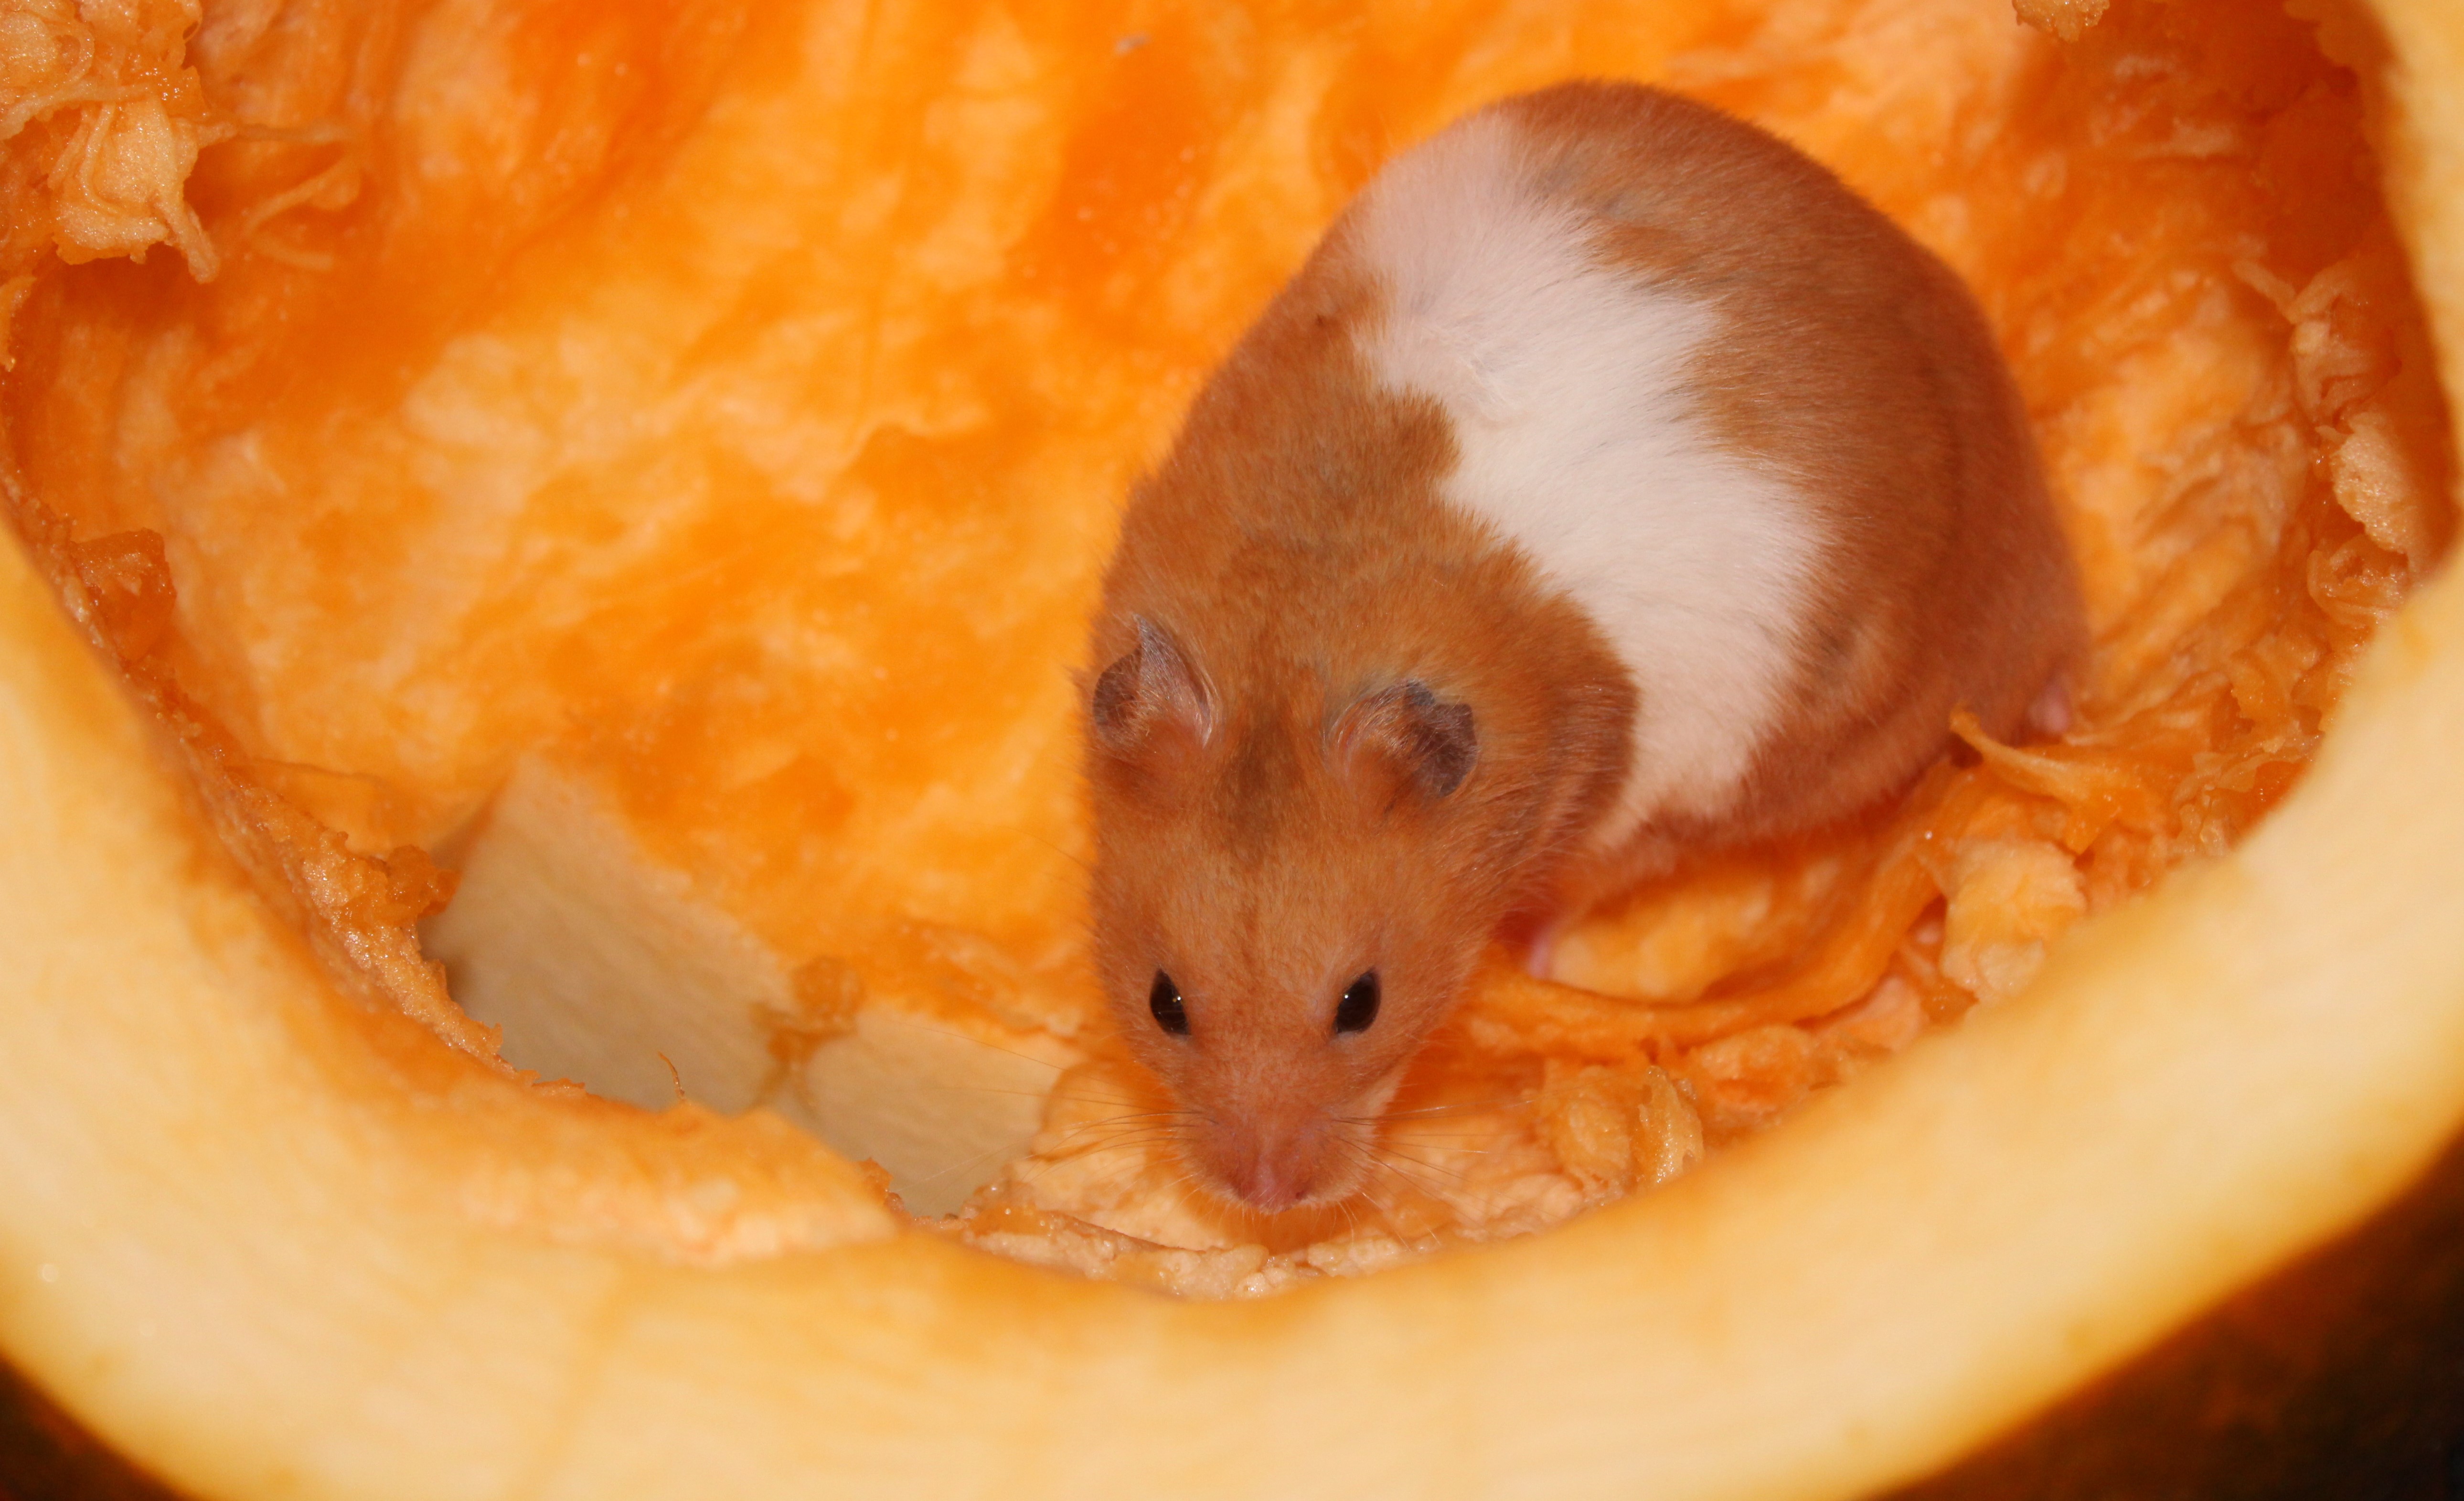 Milku in a pumpkin